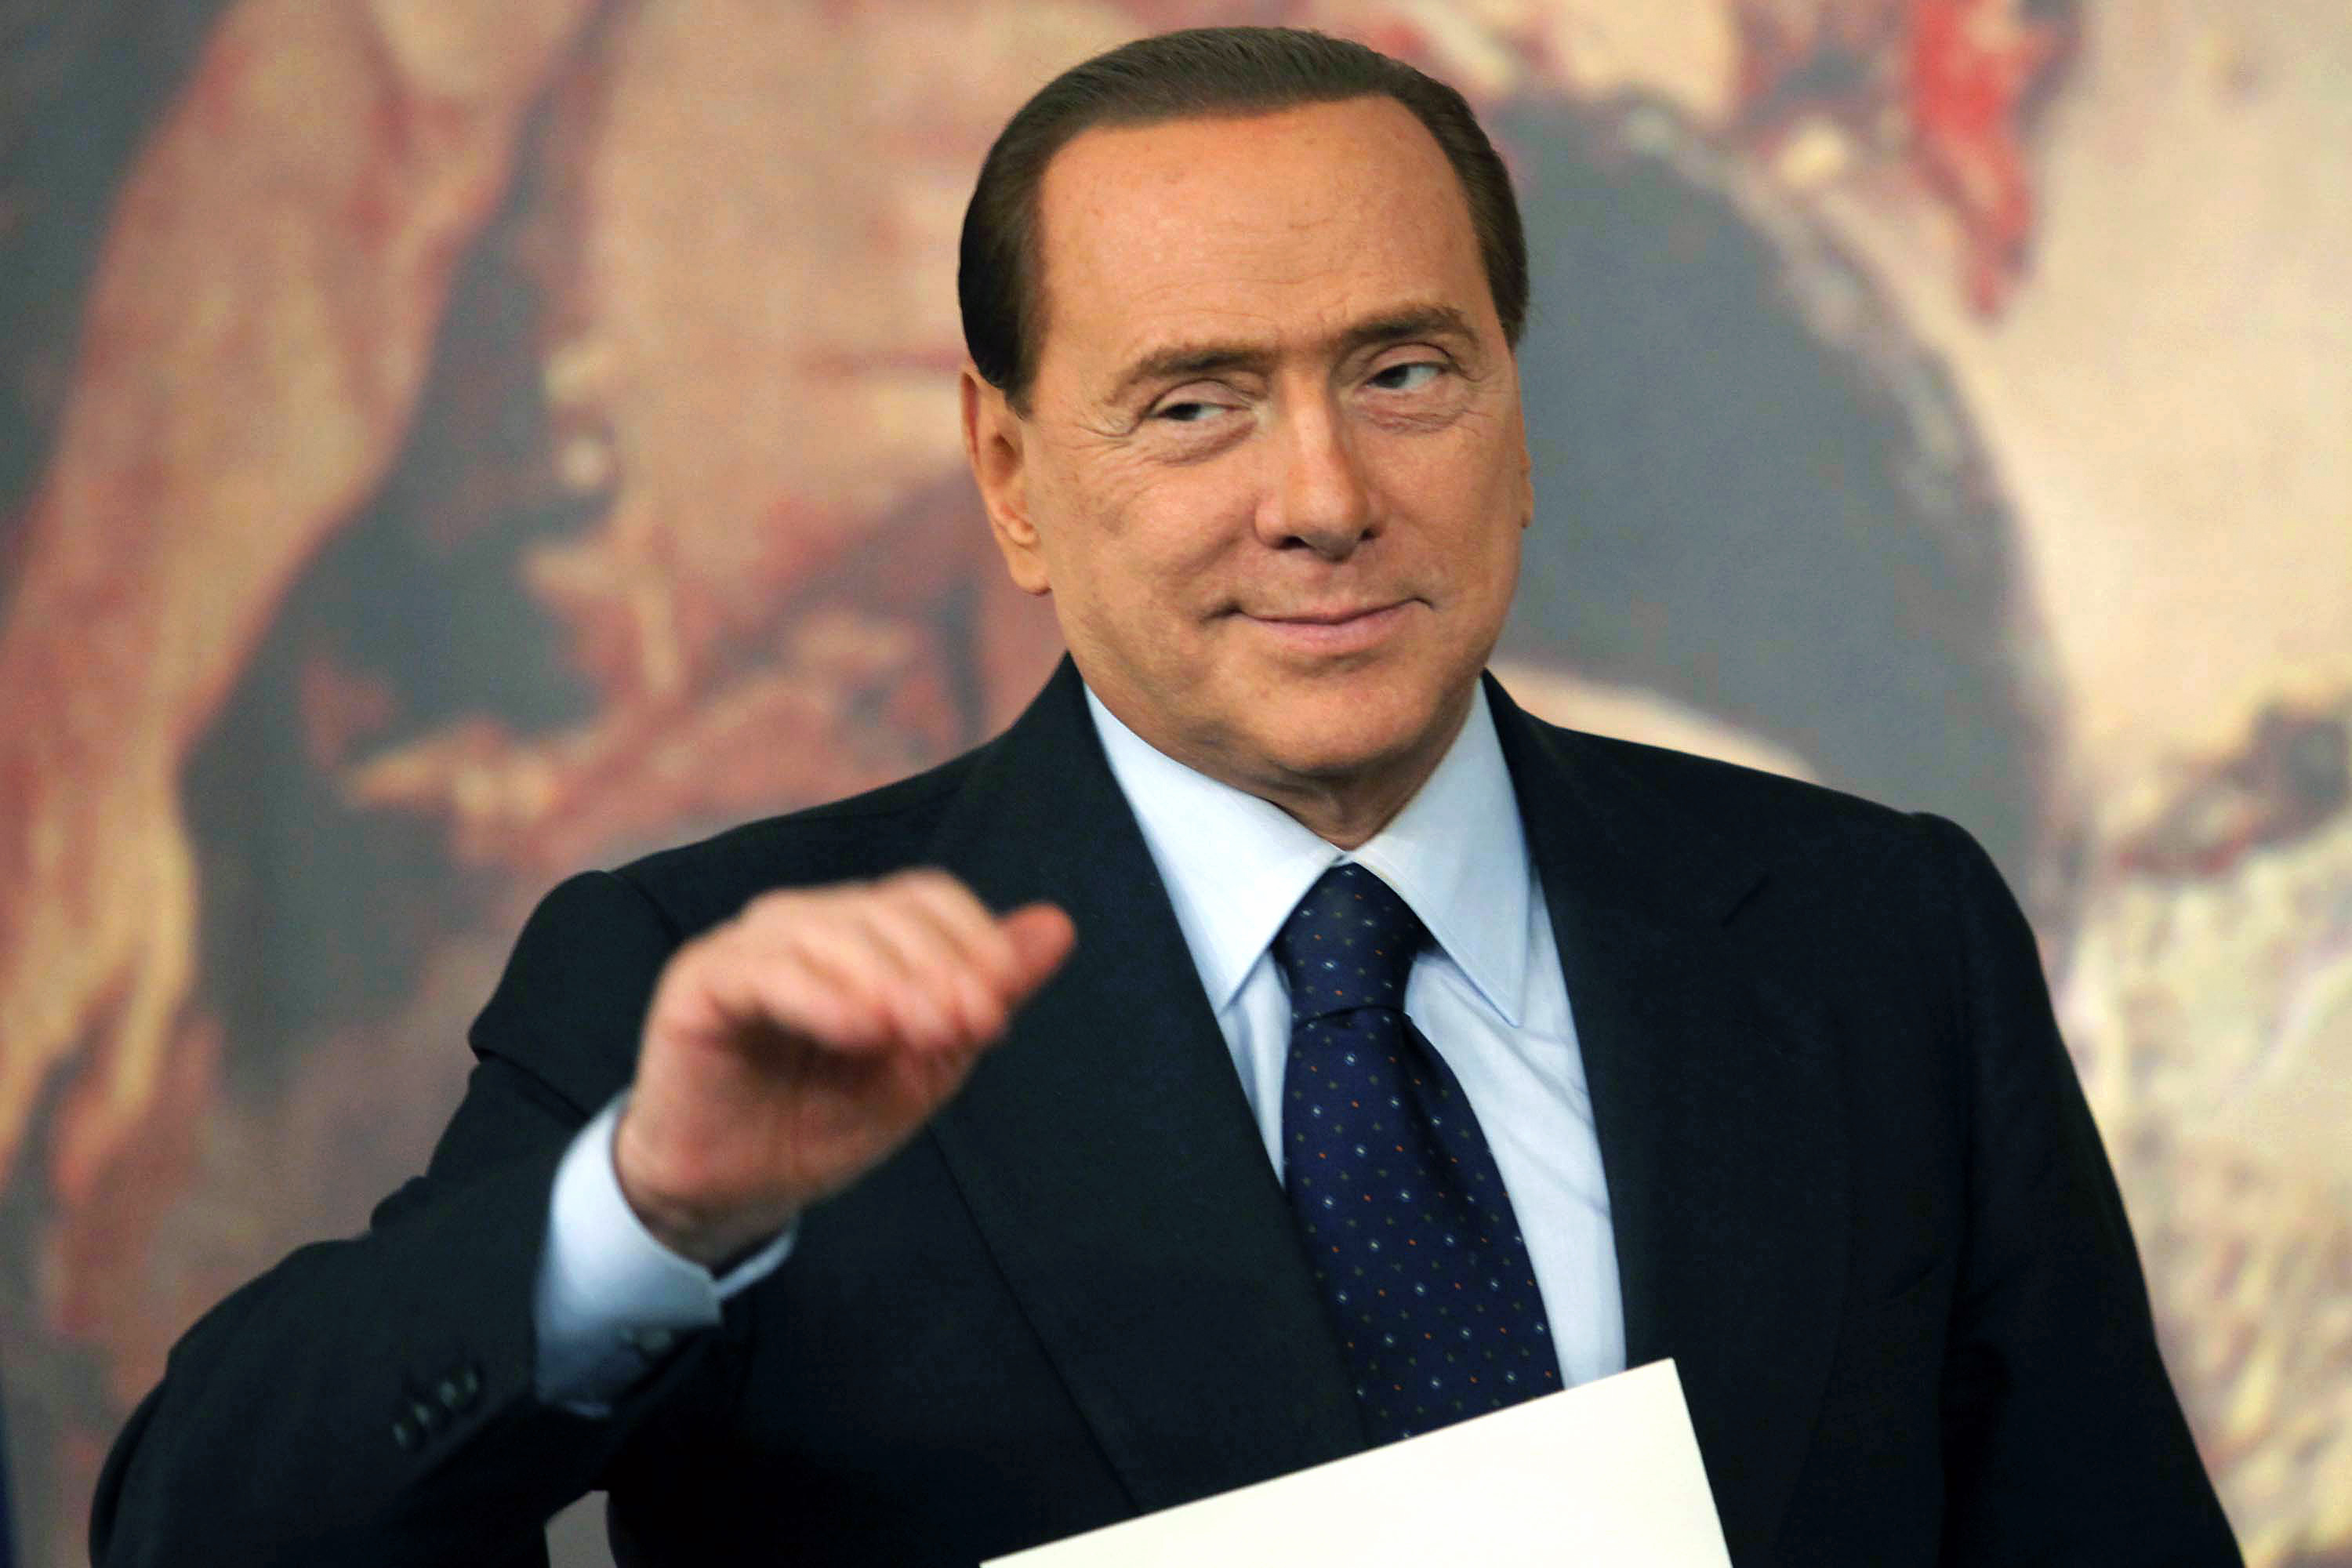 Köp av sexuell tjänst, Italien, Flicka, Silvio Berlusconi, Berlusconi